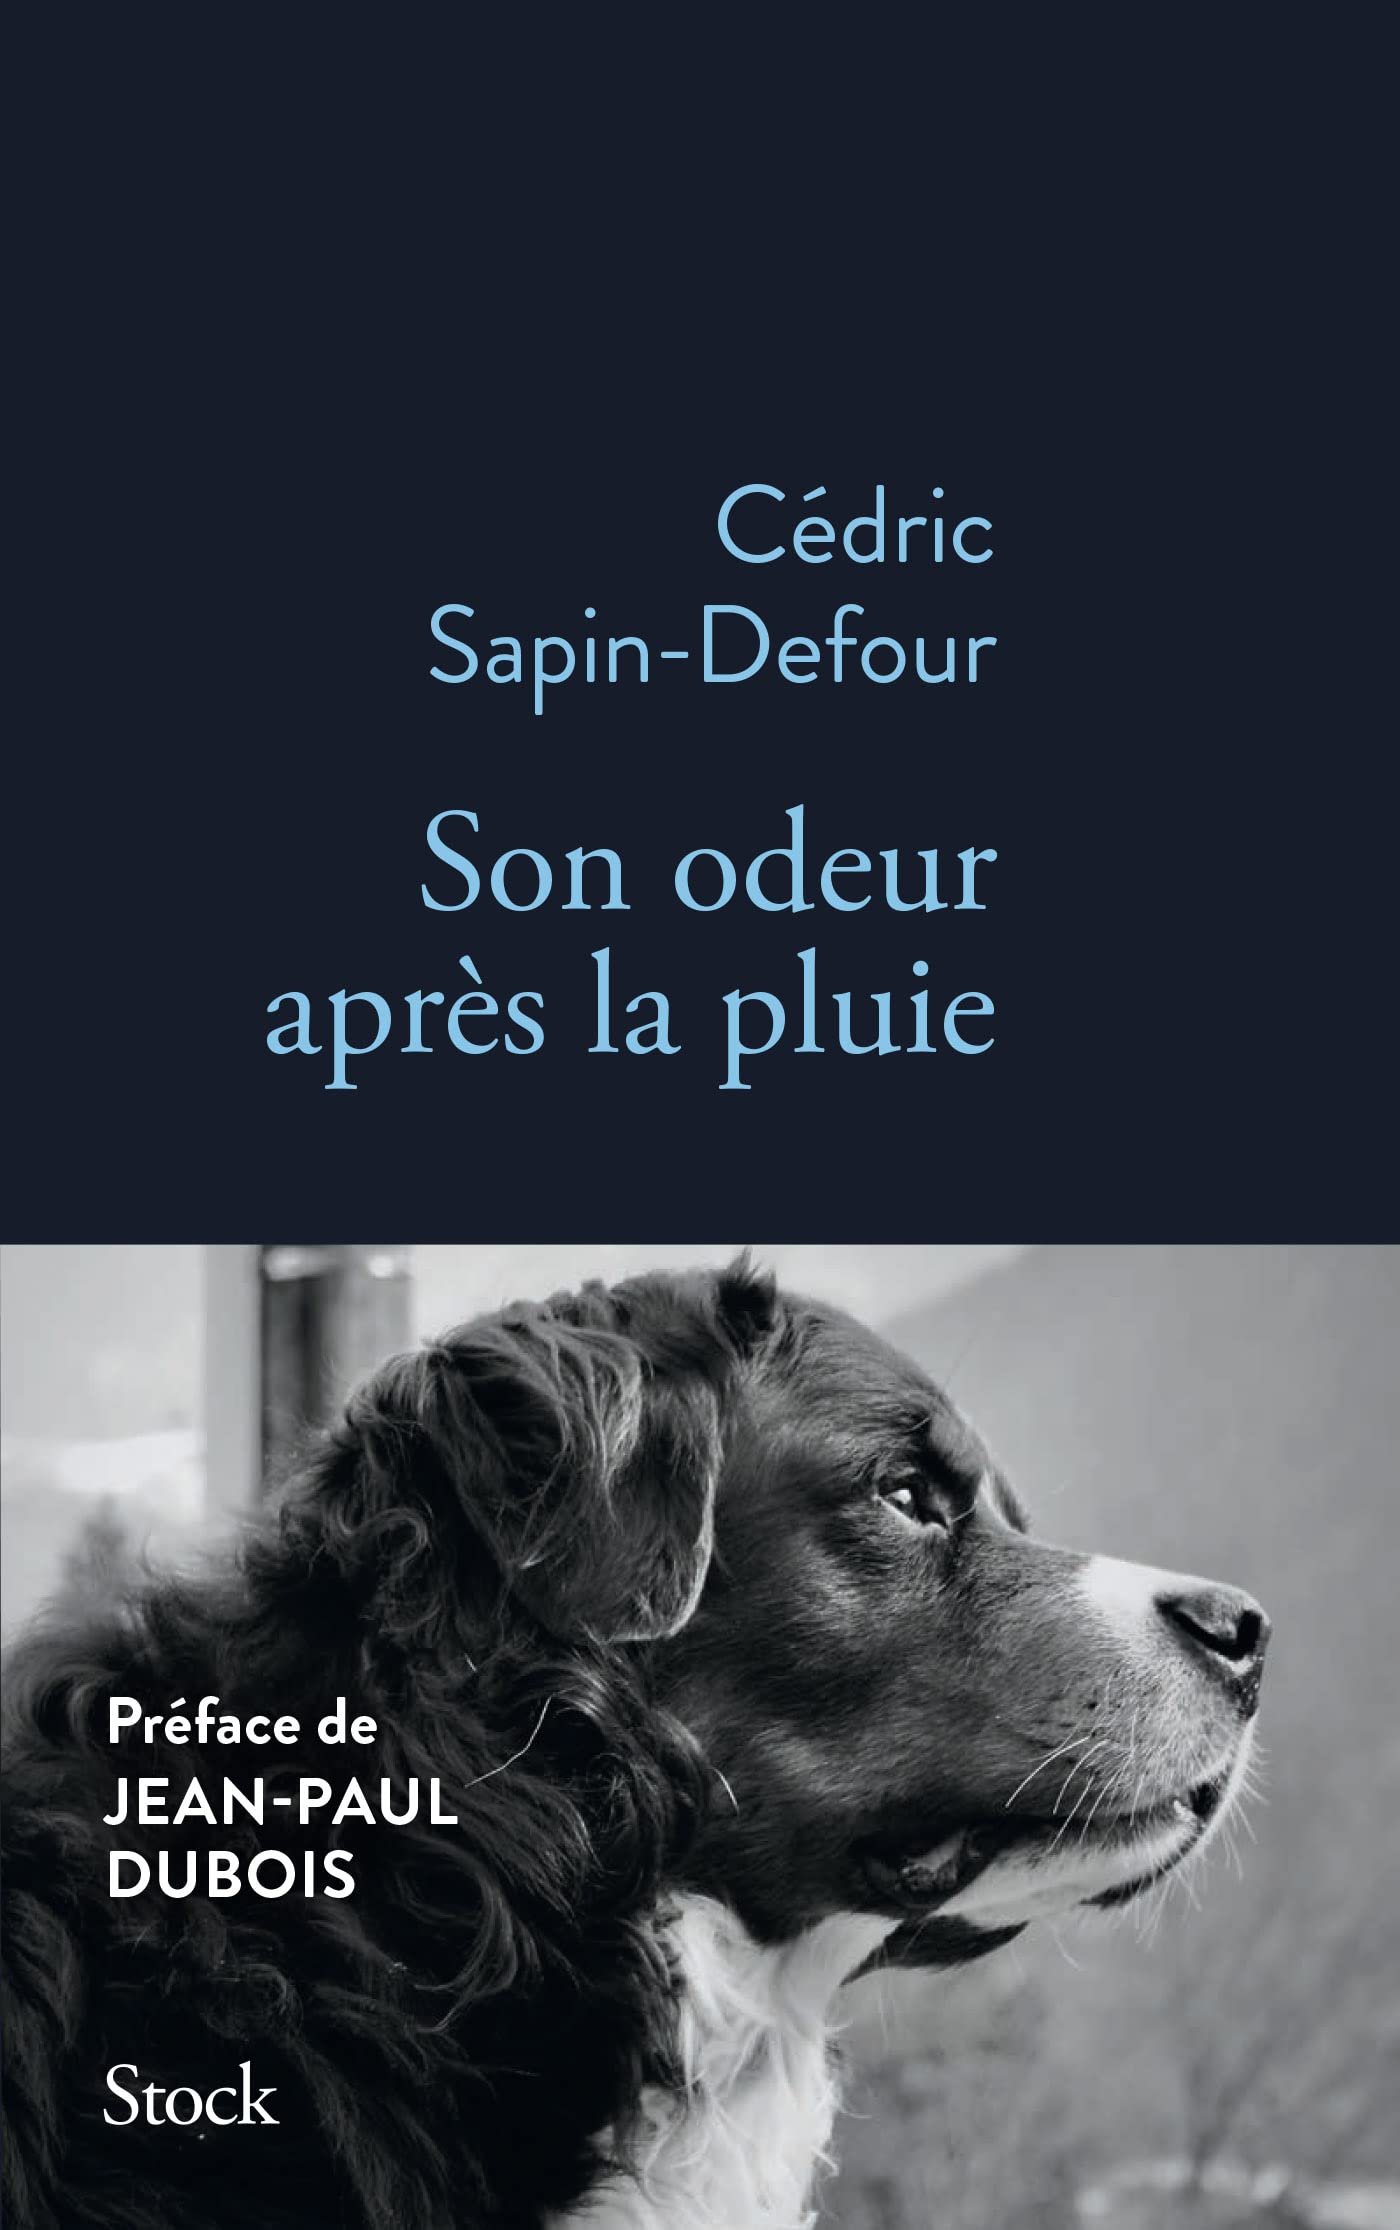 Cédric Sapin-Defour – Son odeur après la pluie